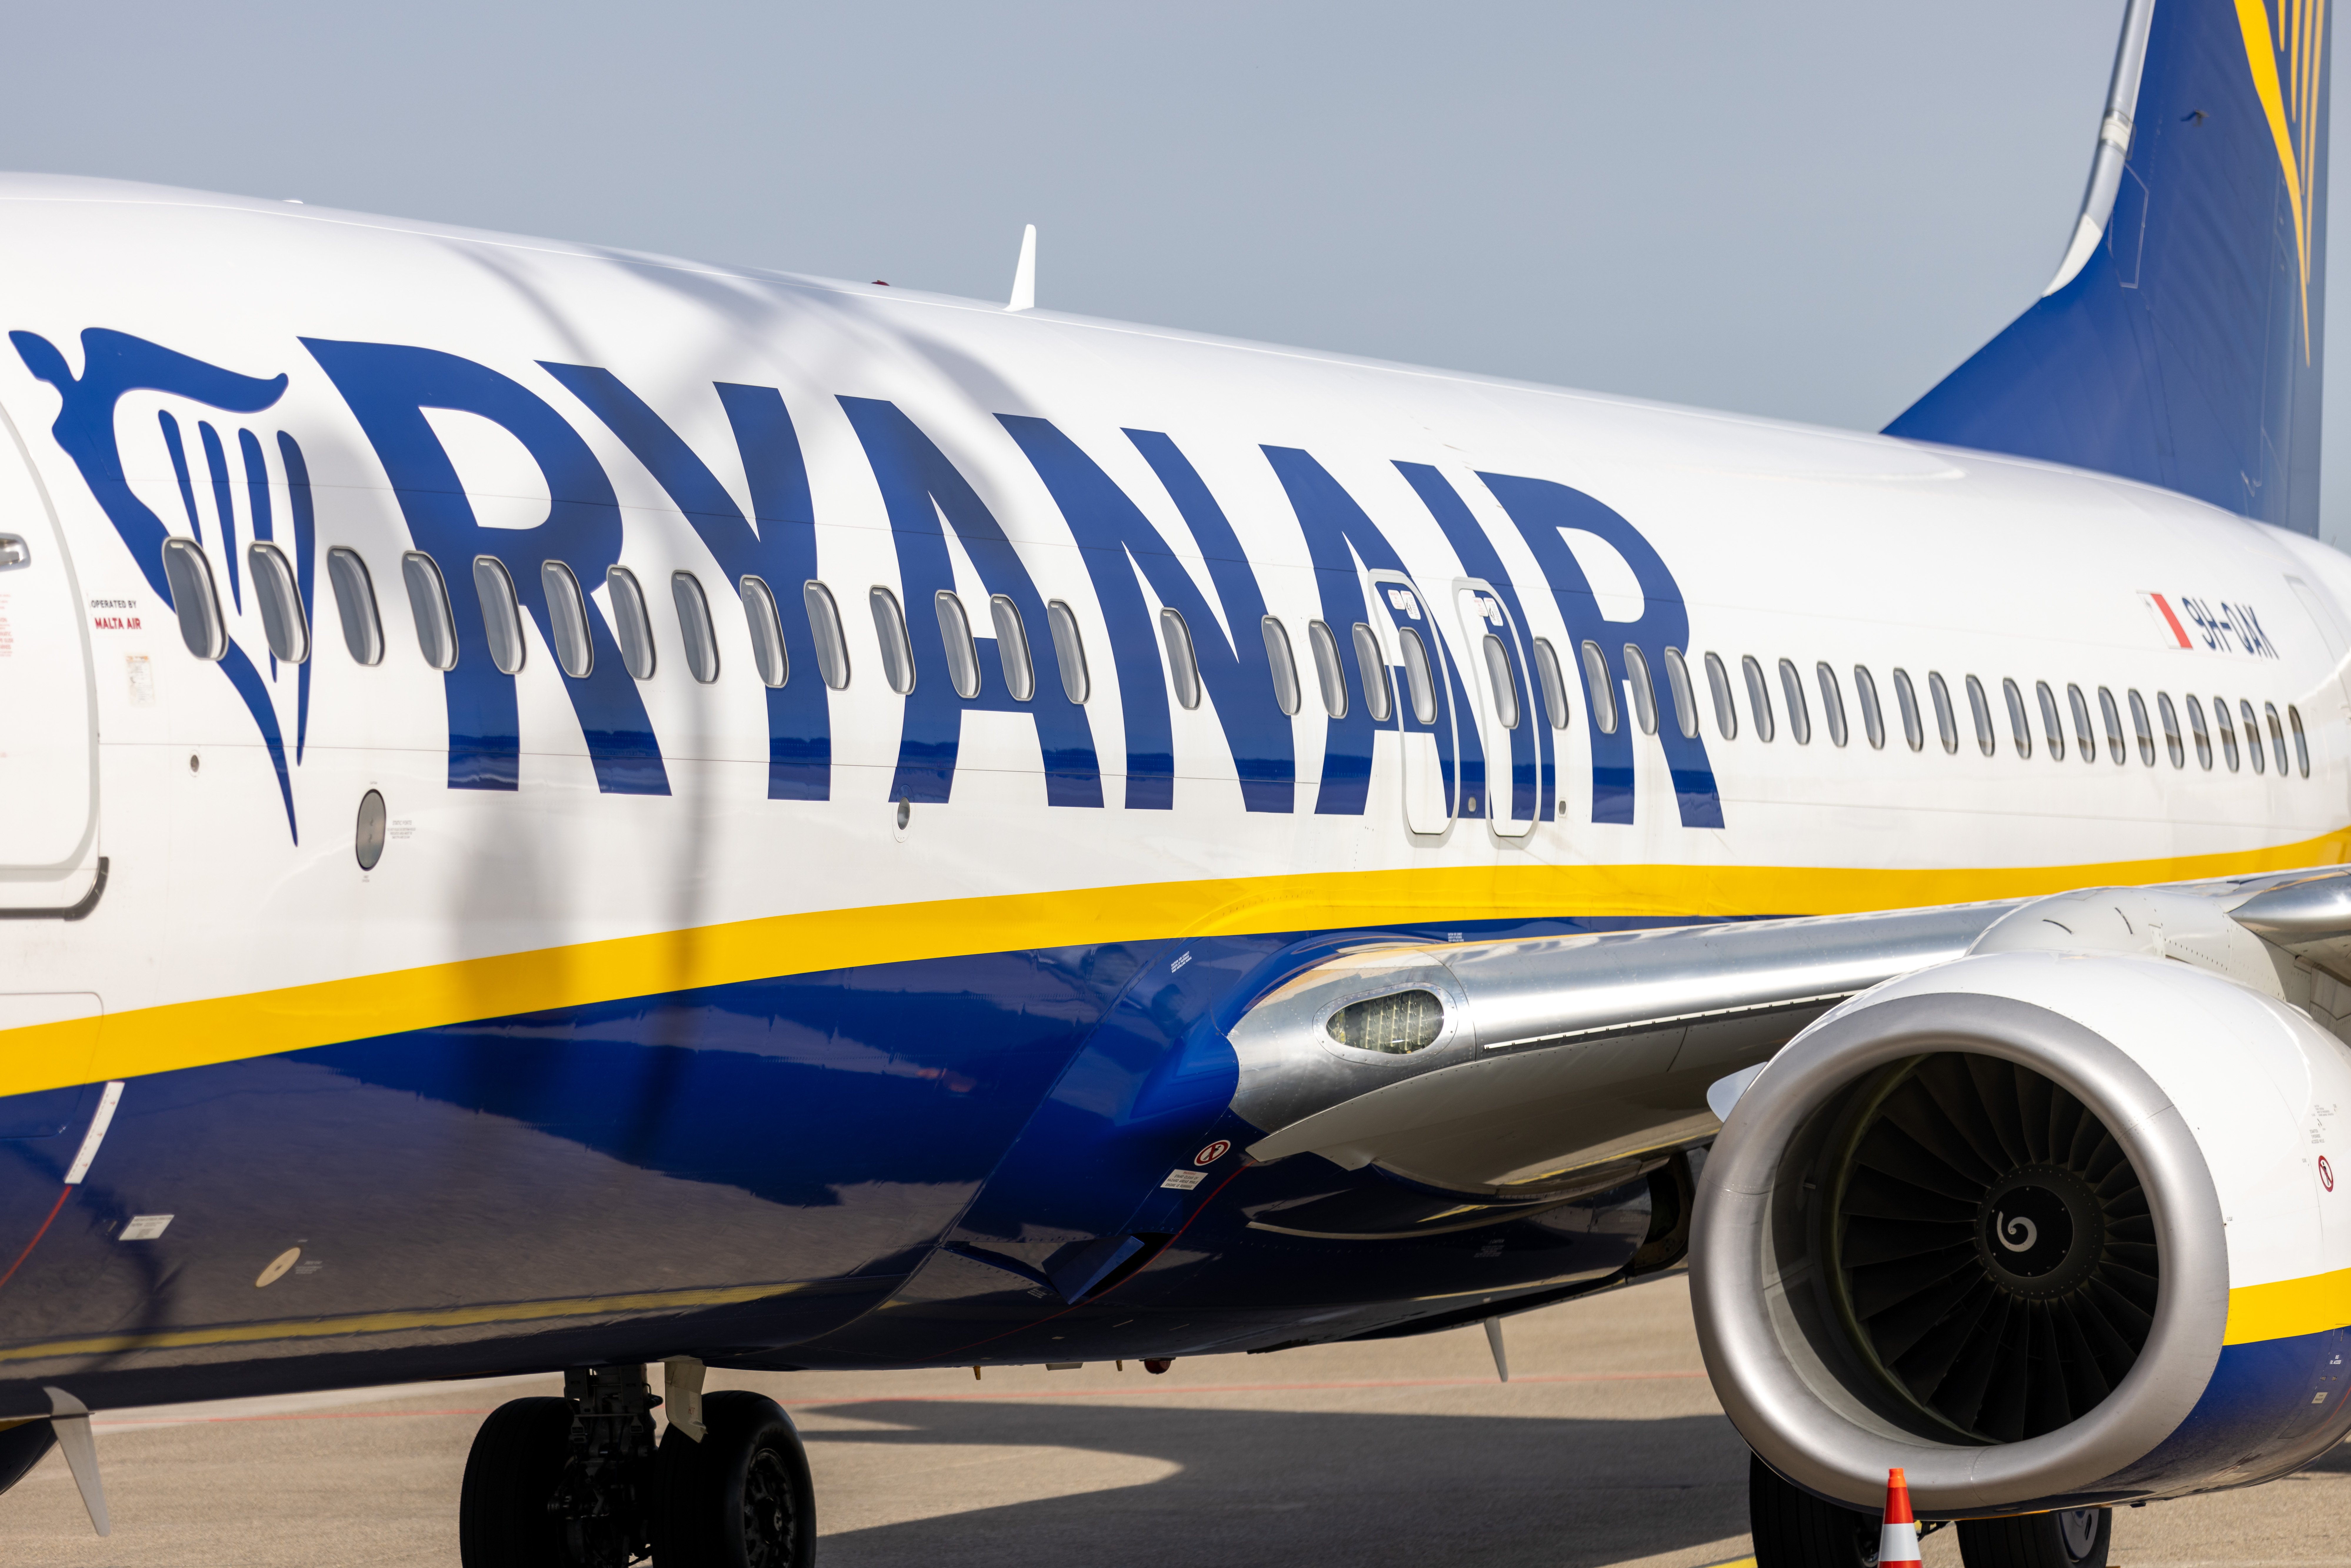 Viaje oído Redondo Ryanair transporta 160 millones de pasajeros y supera el récord de 2019